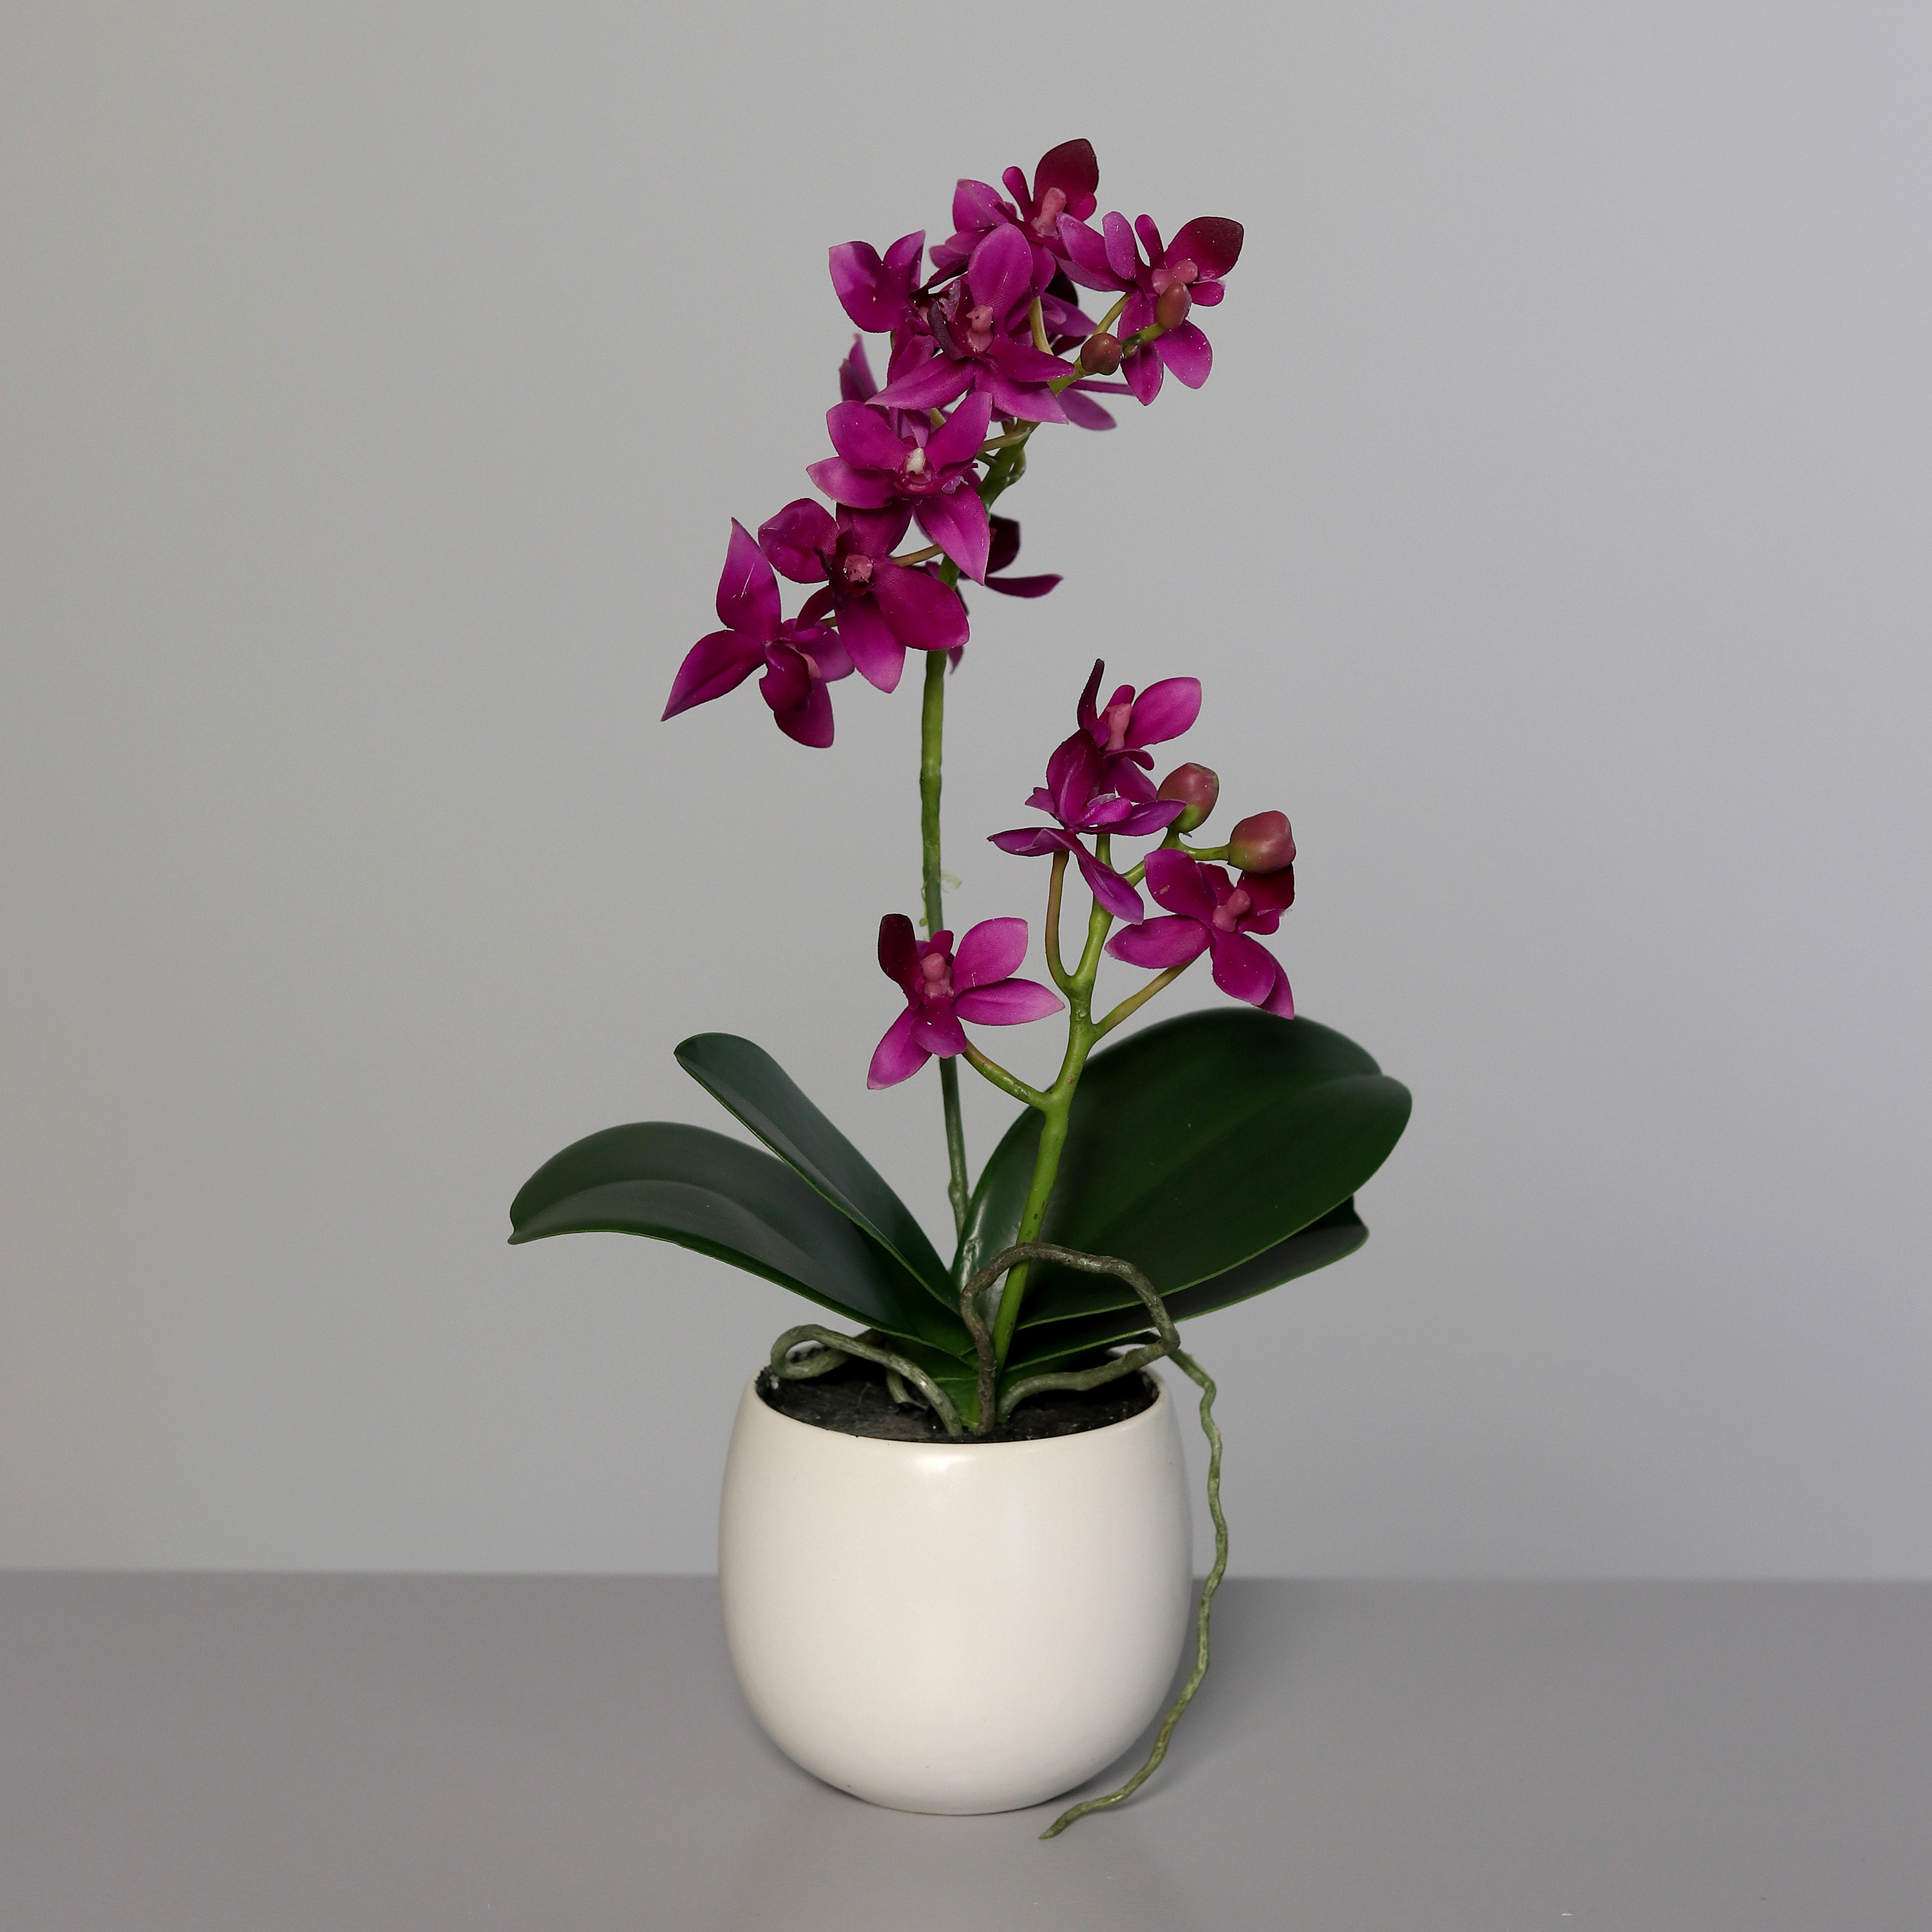 DPI GMBH - BRÜHL Orchidee pink 34cm im Keramiktopf